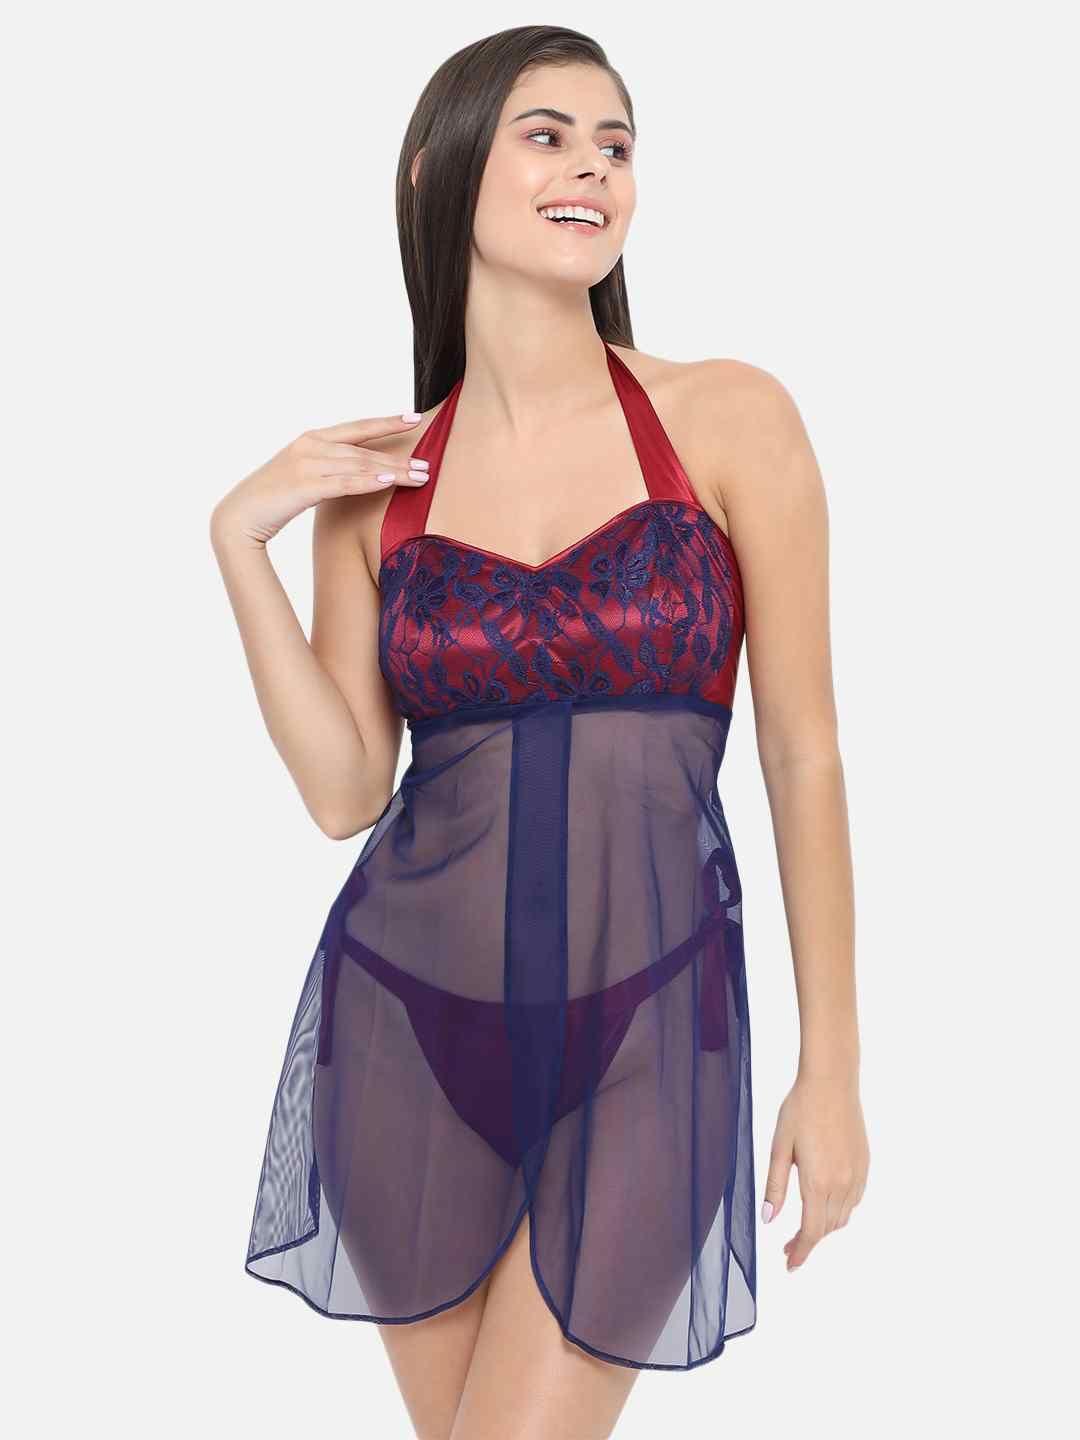 Plus Size Sexy Lingerie Women Satin+Lace Robe Babydoll Nightdress Gown  Sleepwear | eBay